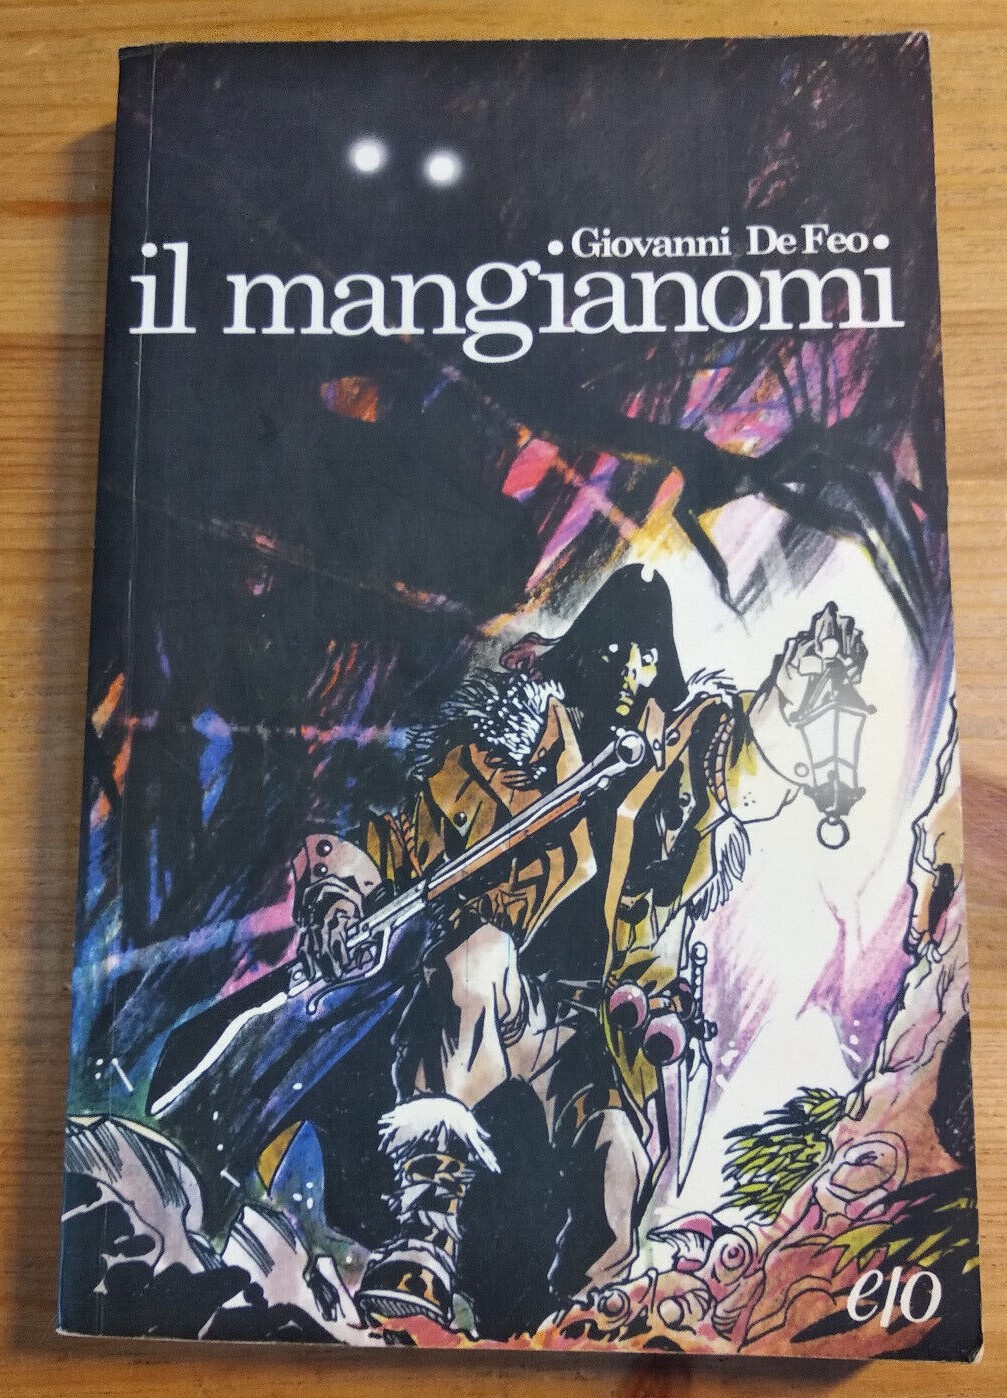 La rarissima prima edizione assoluta de “Il mangianomi” di Giovanni De Feo (edizioni e/o 2012)